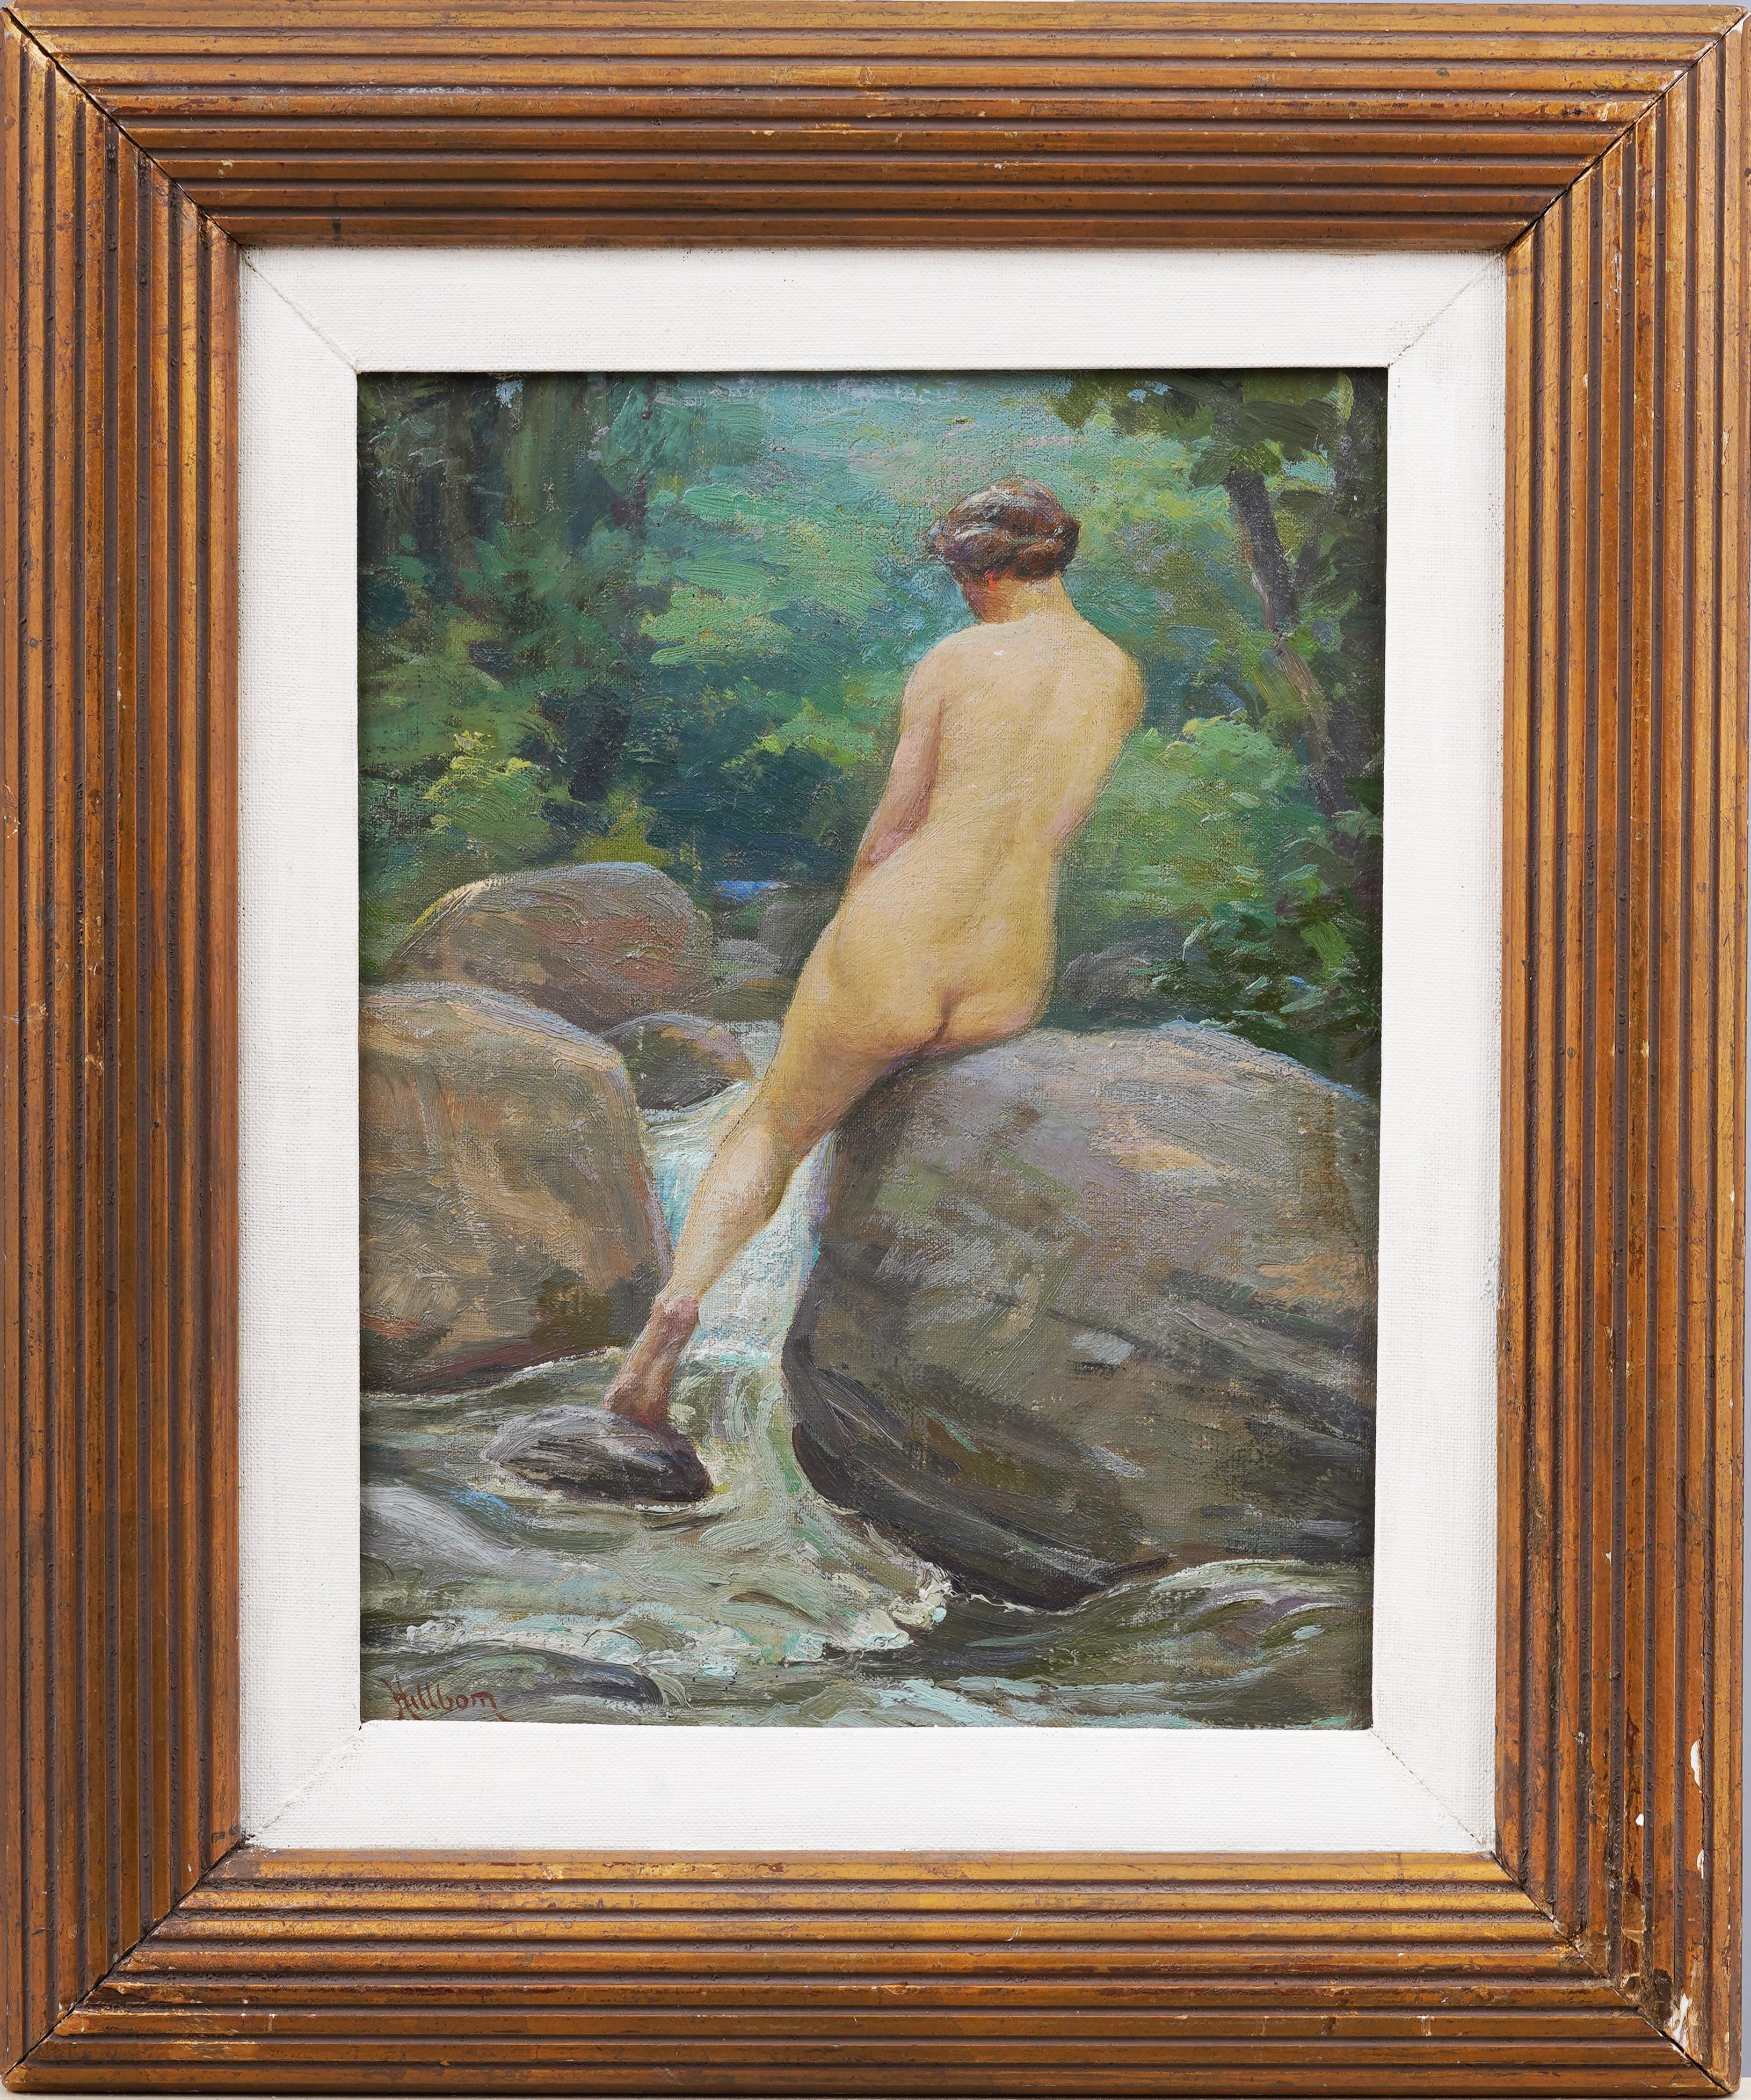 Peinture à l'huile impressionniste américaine ancienne nue par Stream exposée encadrée